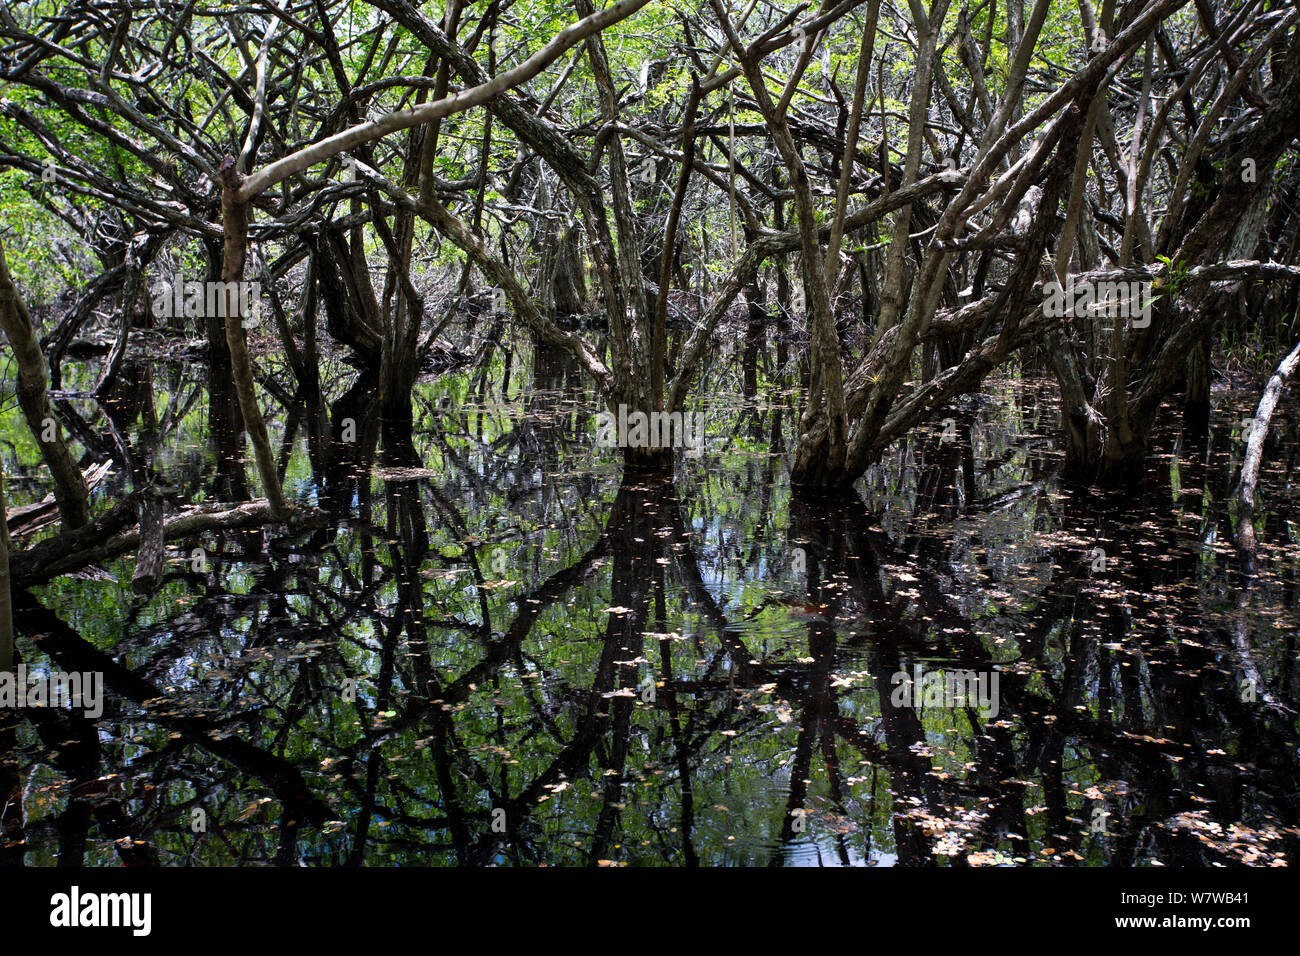 Les zones humides dans le parc botanique QEII, l'île Grand Cayman, îles Caïmans, mai 2012. Banque D'Images